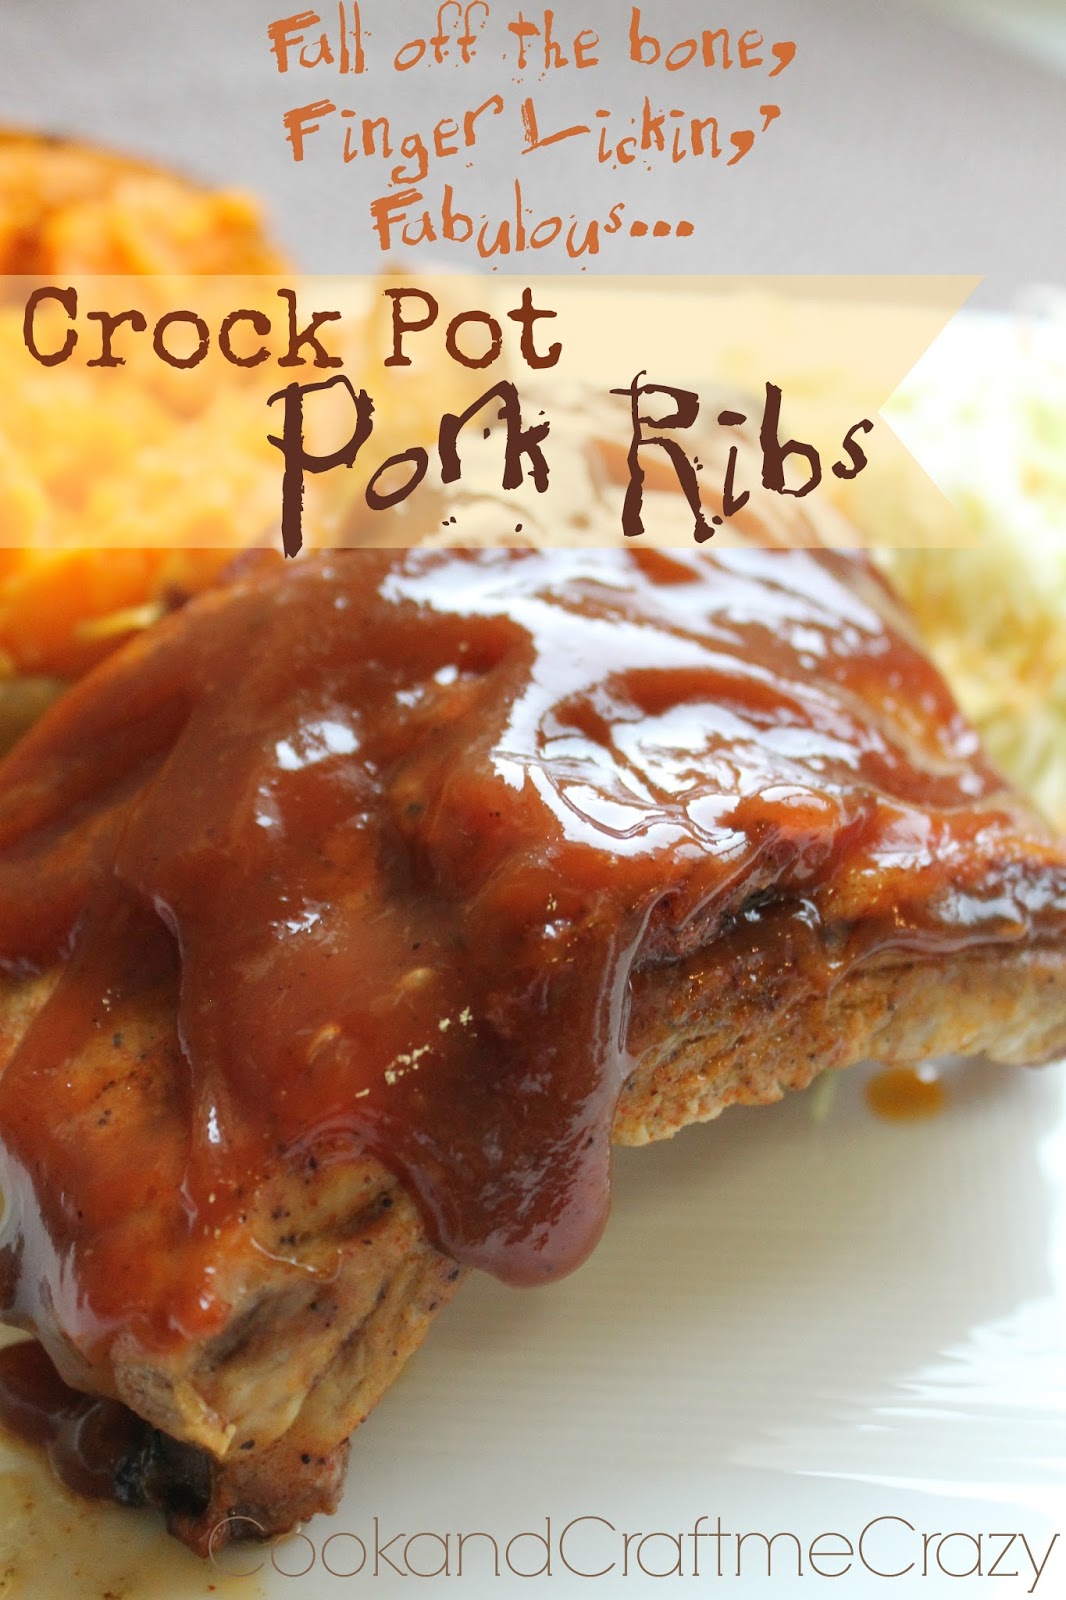 Cook and Craft Me Crazy: Crock Pot Pork Ribs